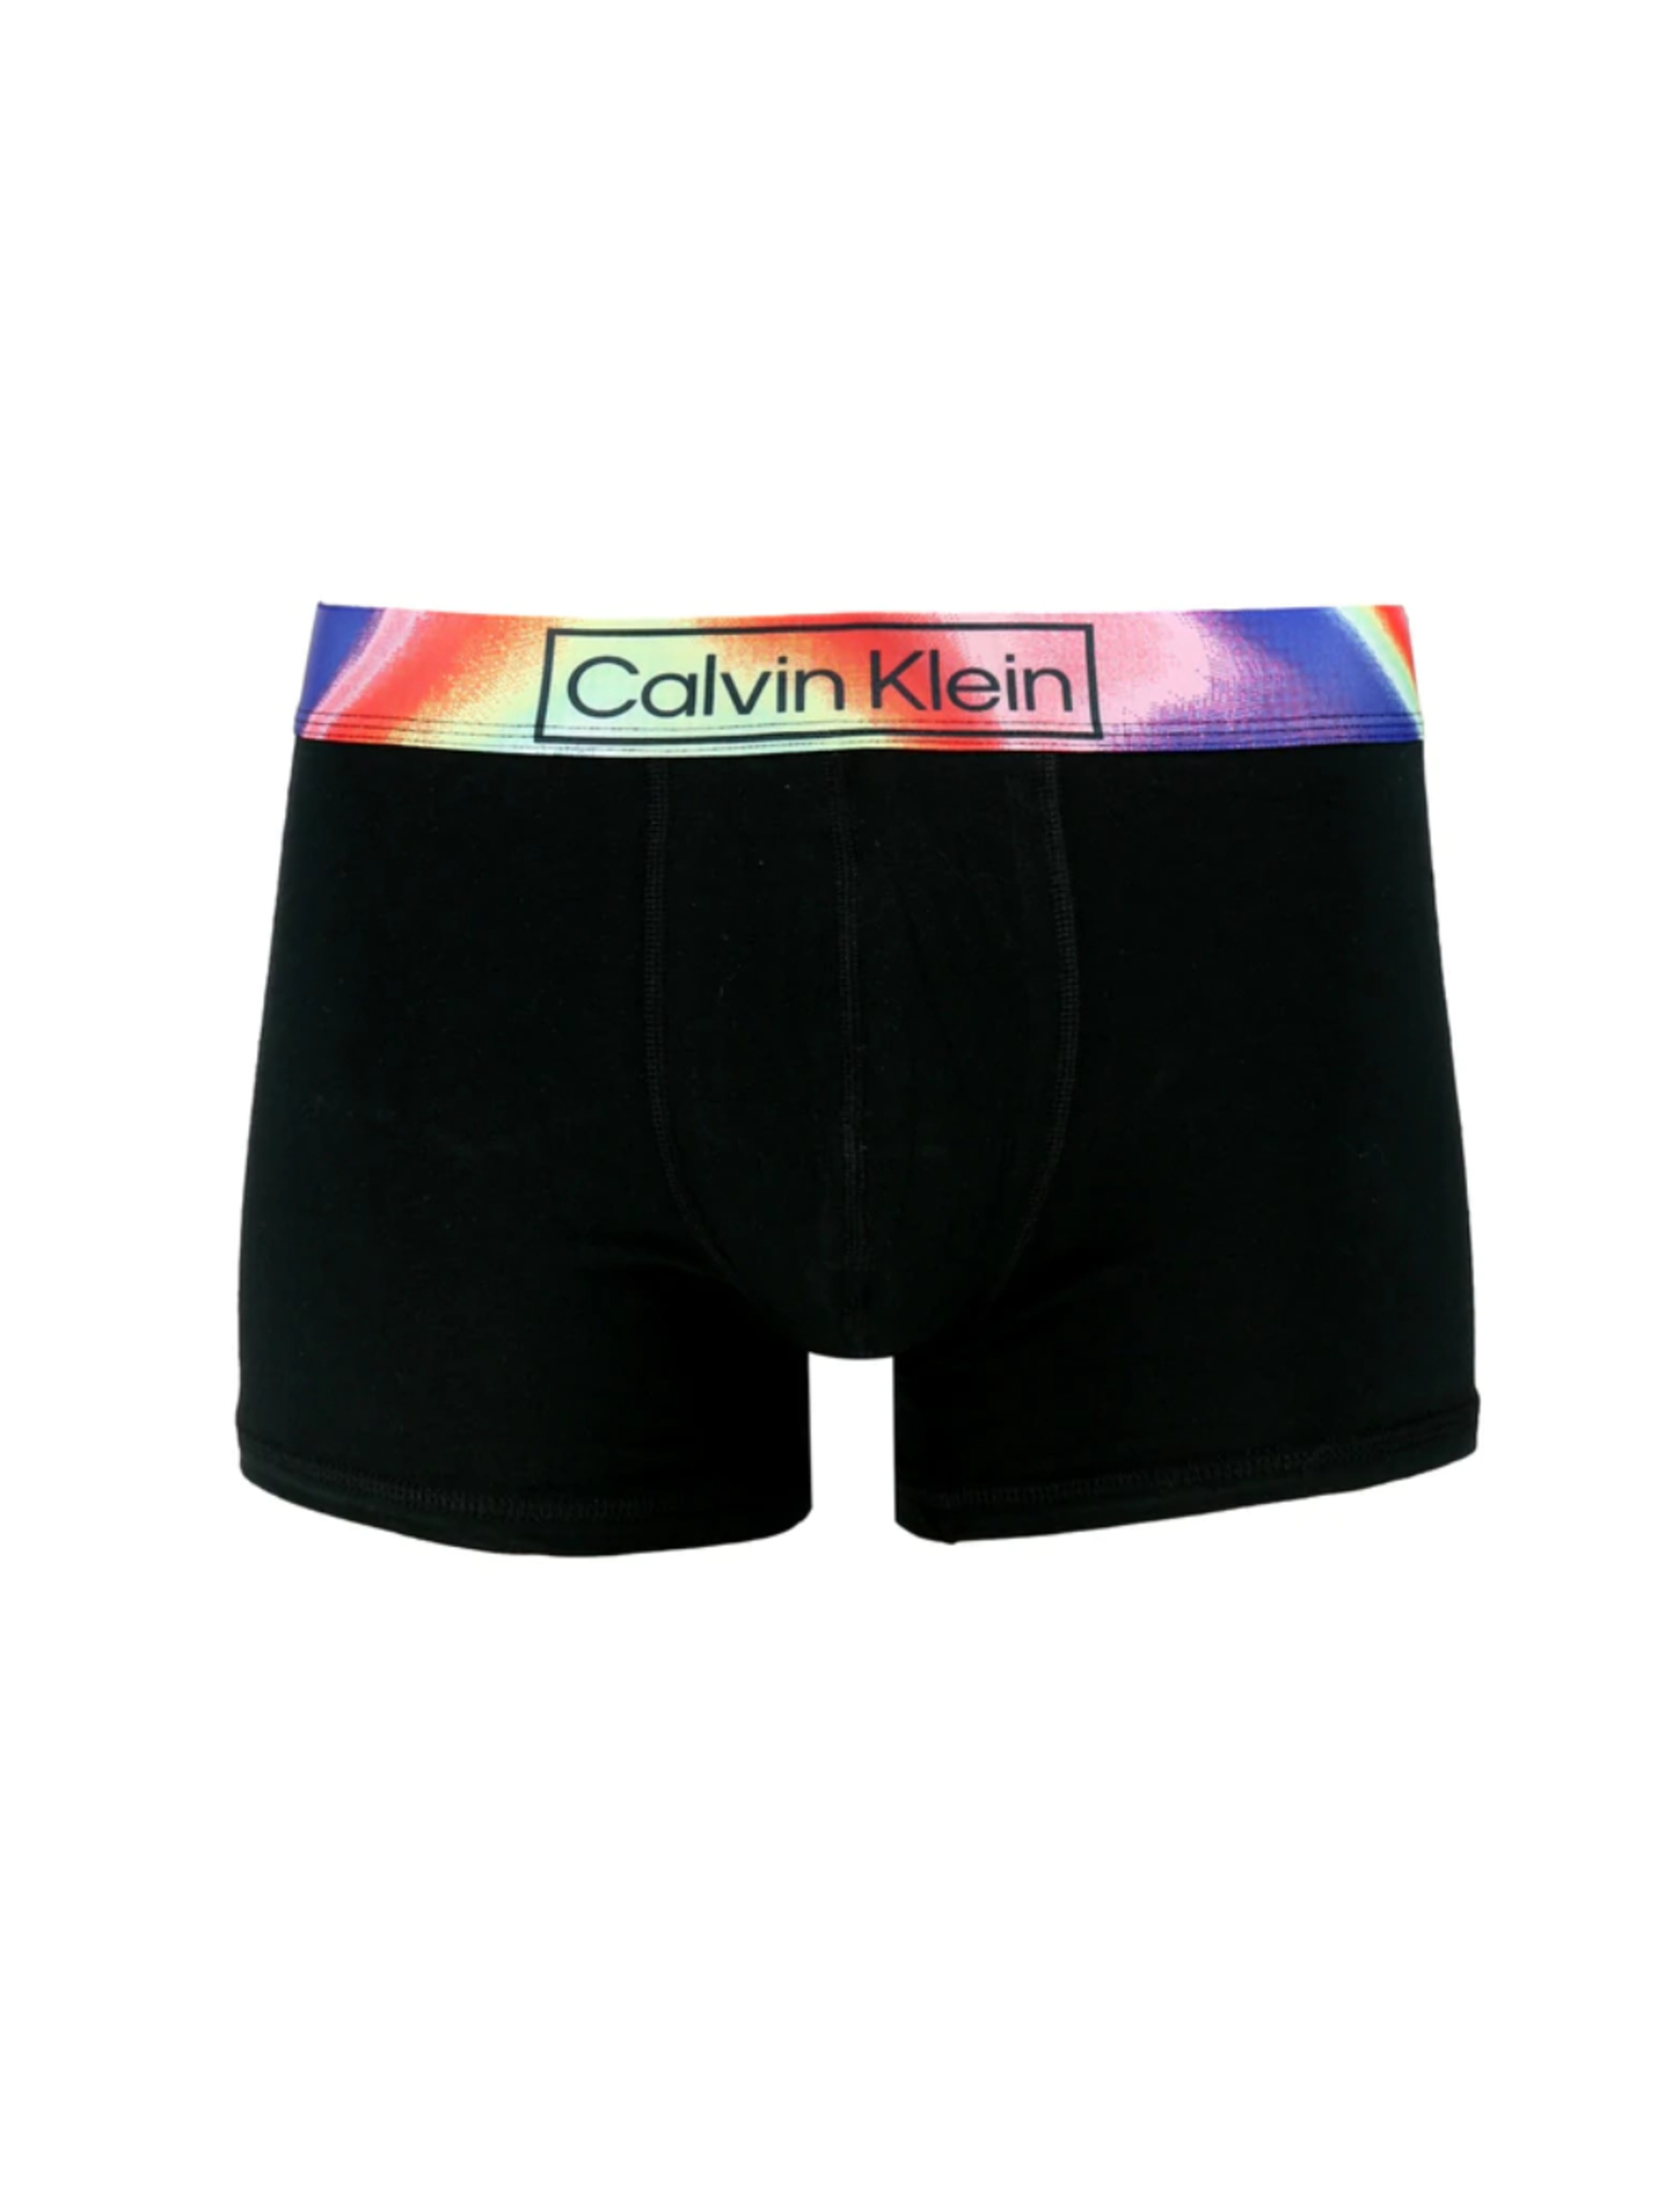 Calvin Klein pánské černé boxerky - S (UB1)